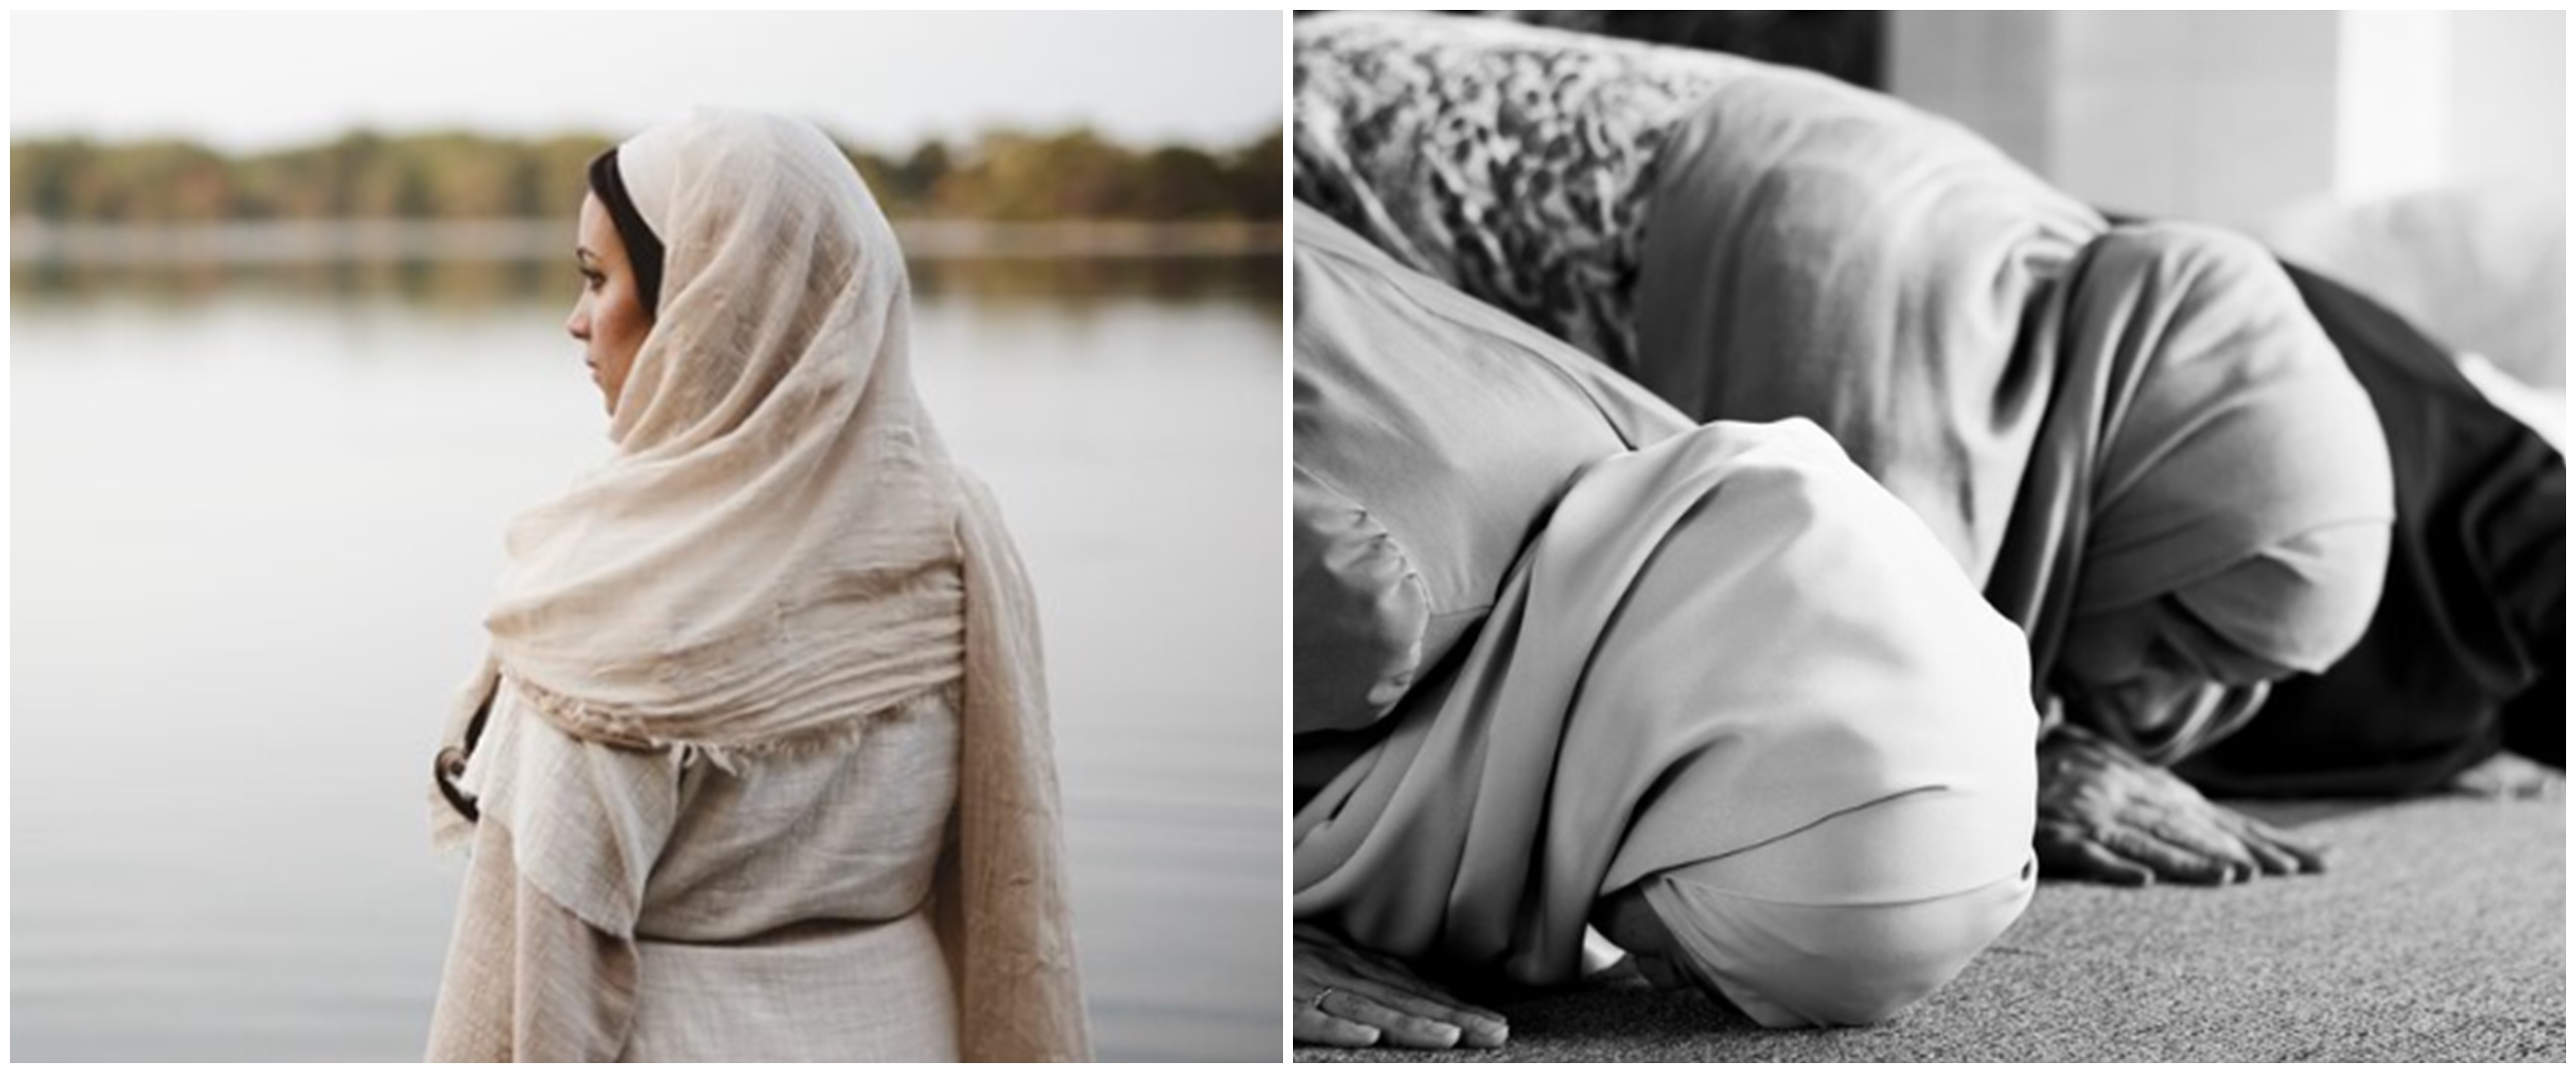 100 Kata-kata sedih menyentuh hati wanita Islami, penuh makna dan bikin hati tenang